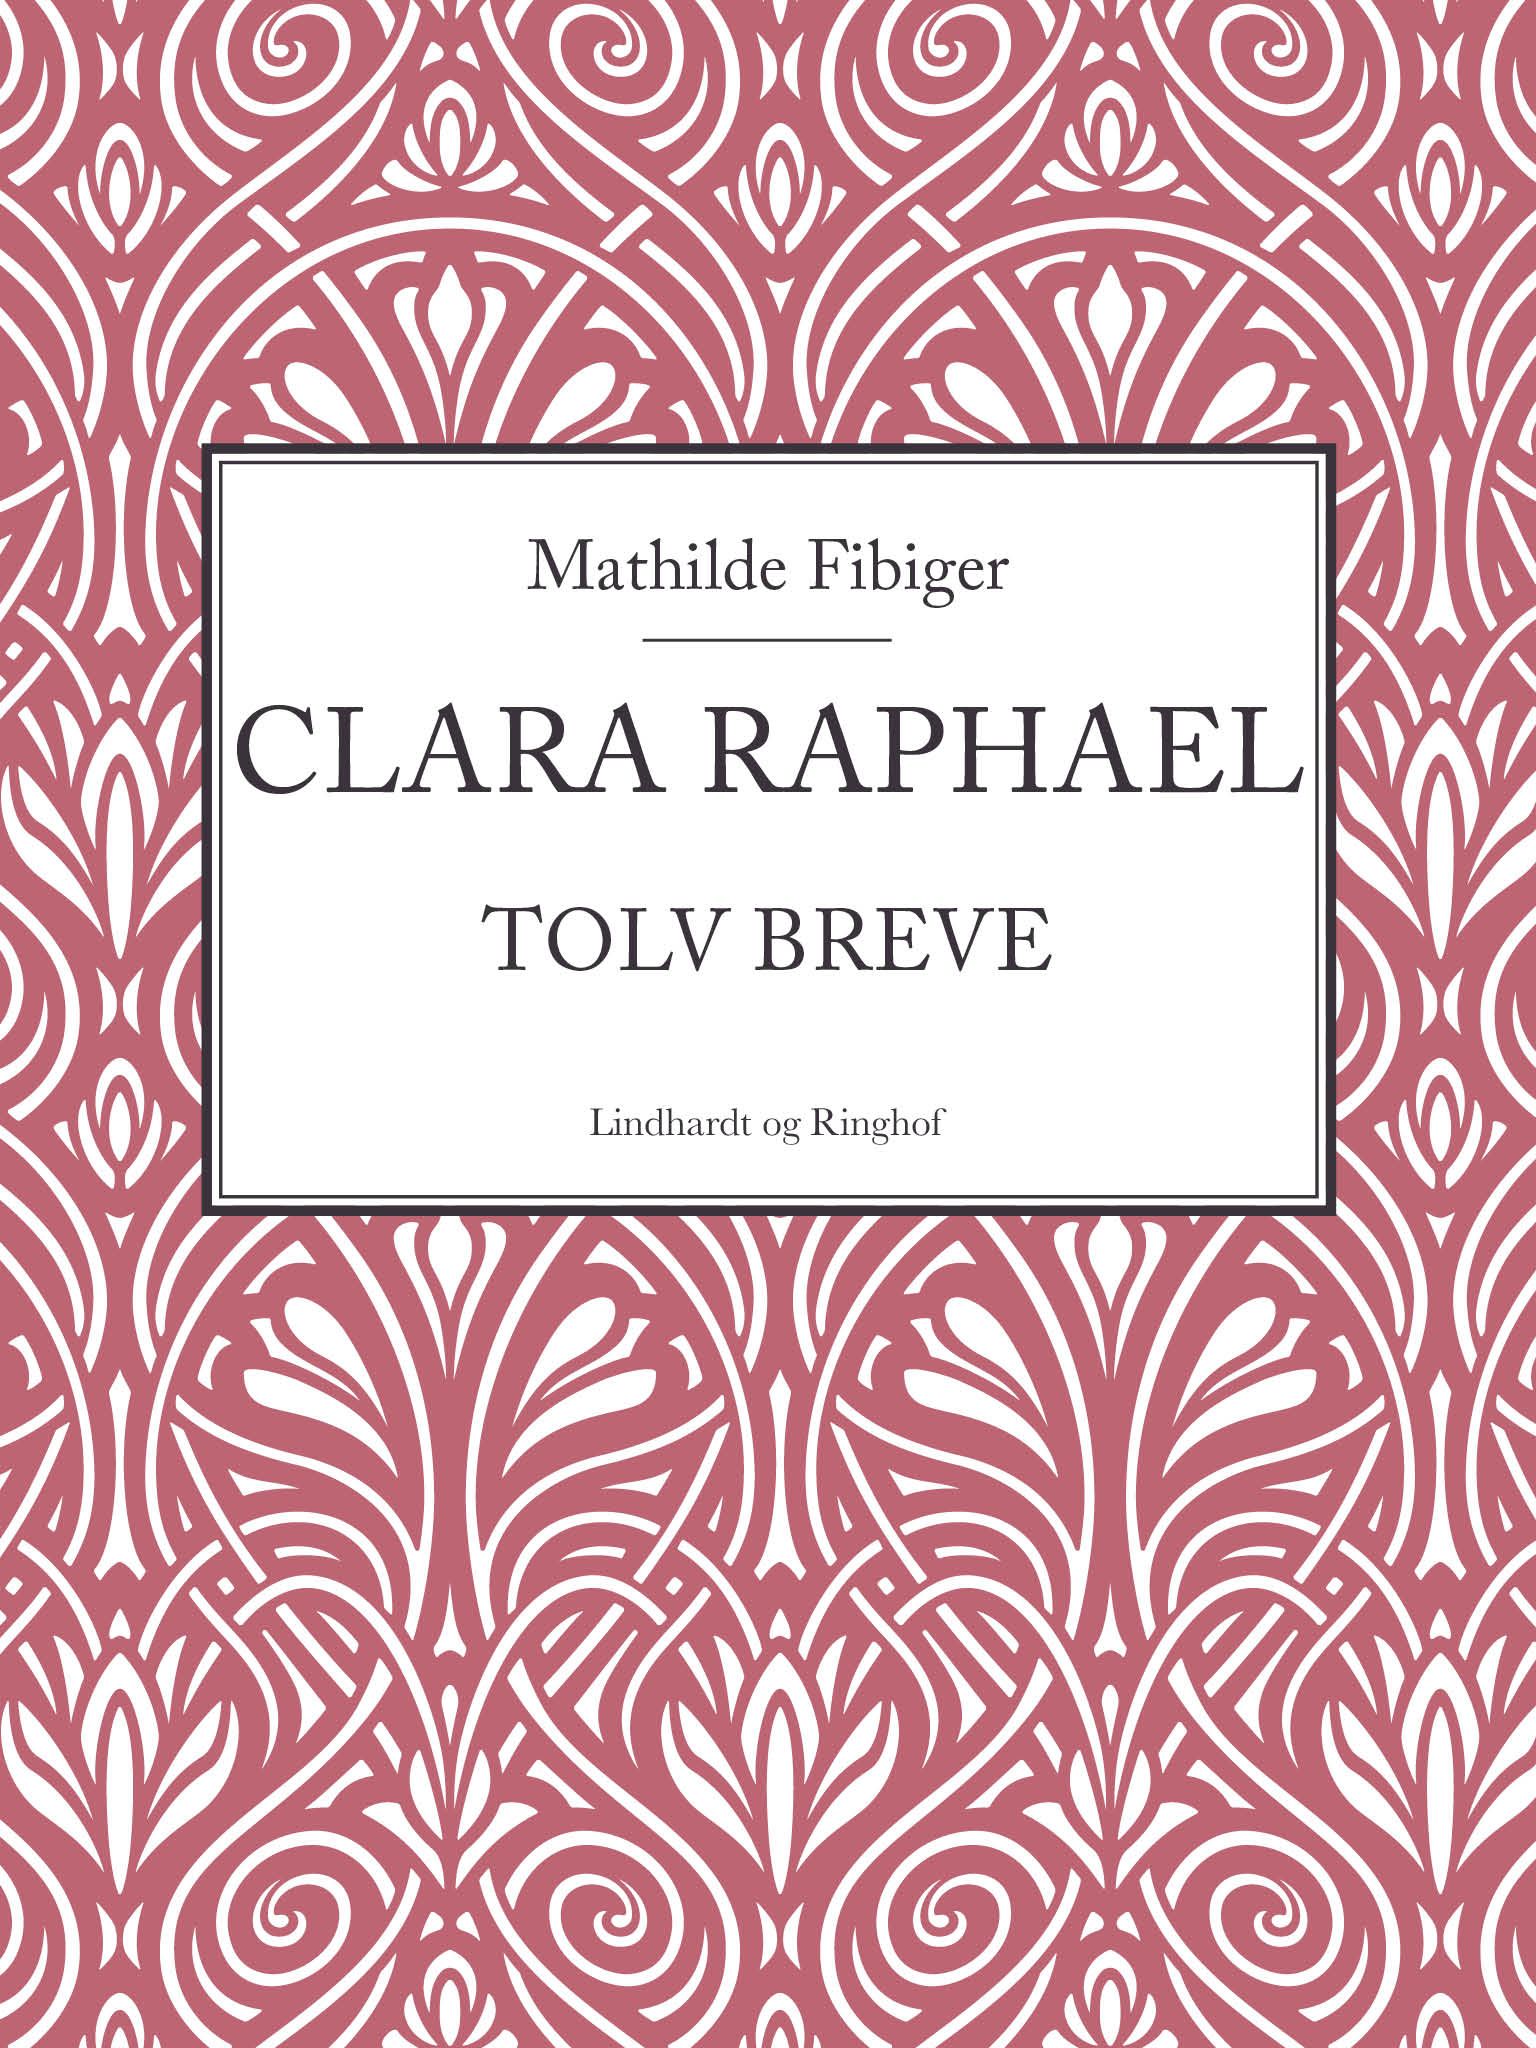 Clara Raphael, e-bog af Mathilde Fibiger